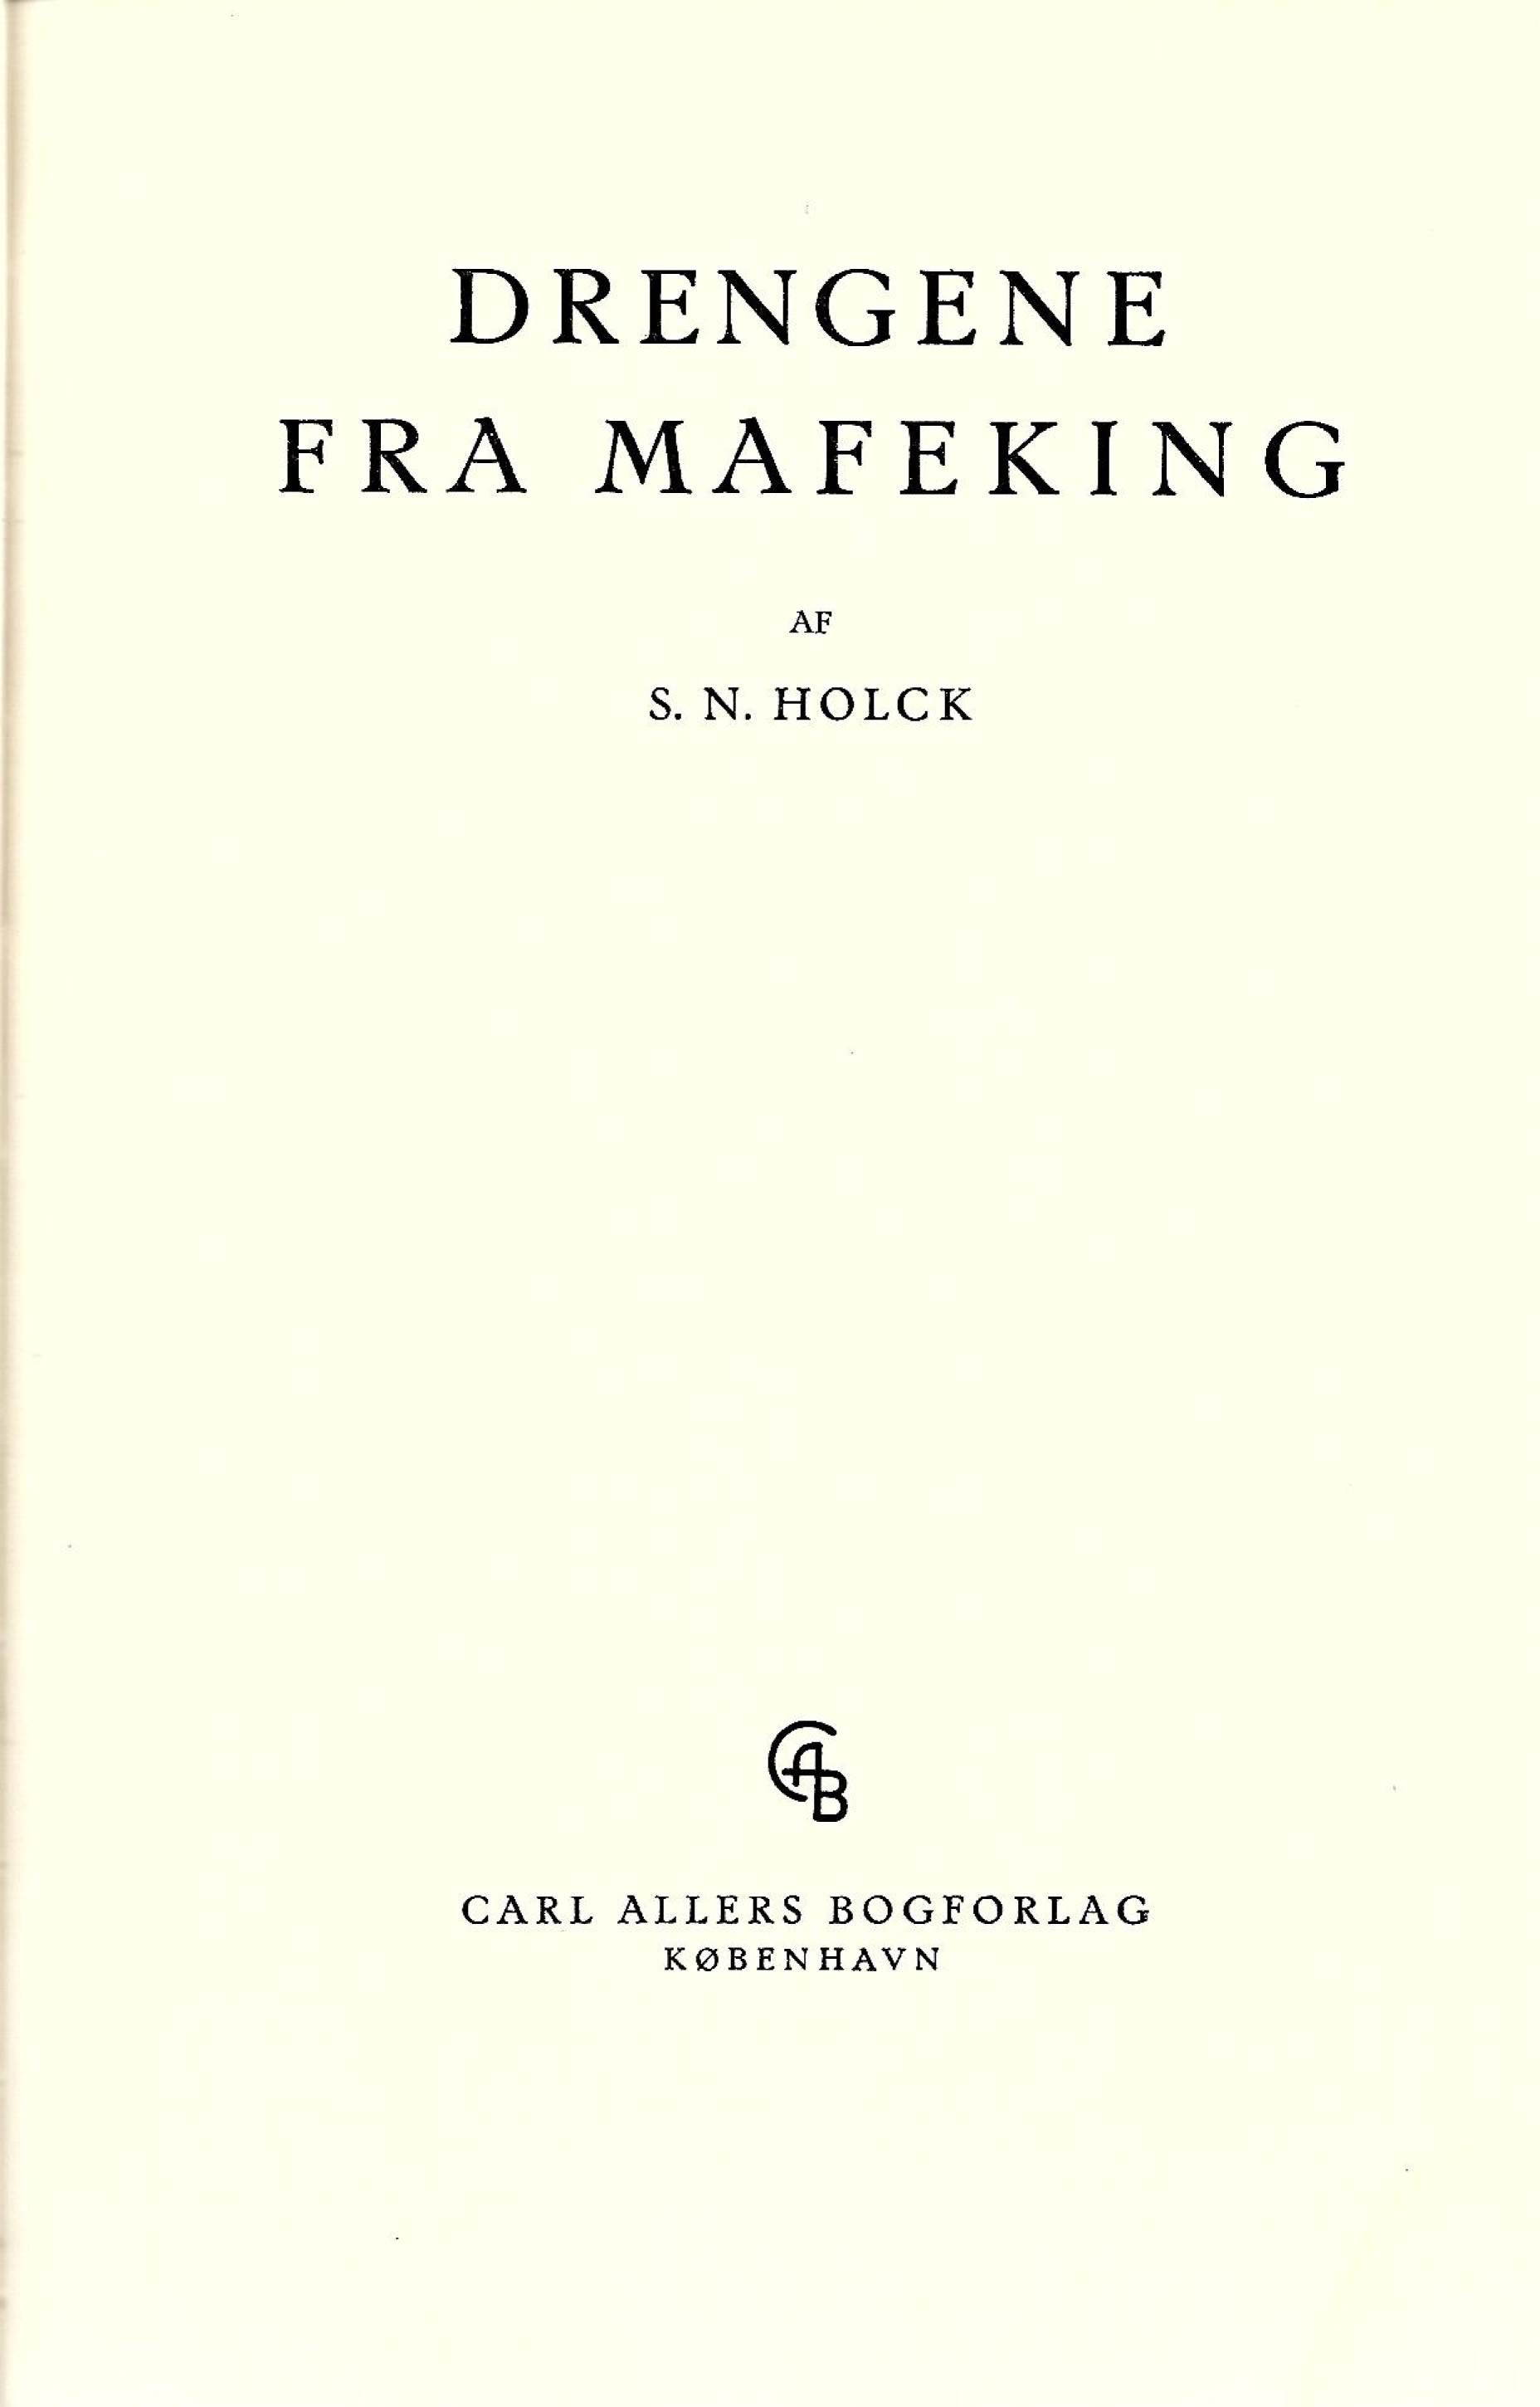 Drengene fra Mafeking - S N Holck 1943-1